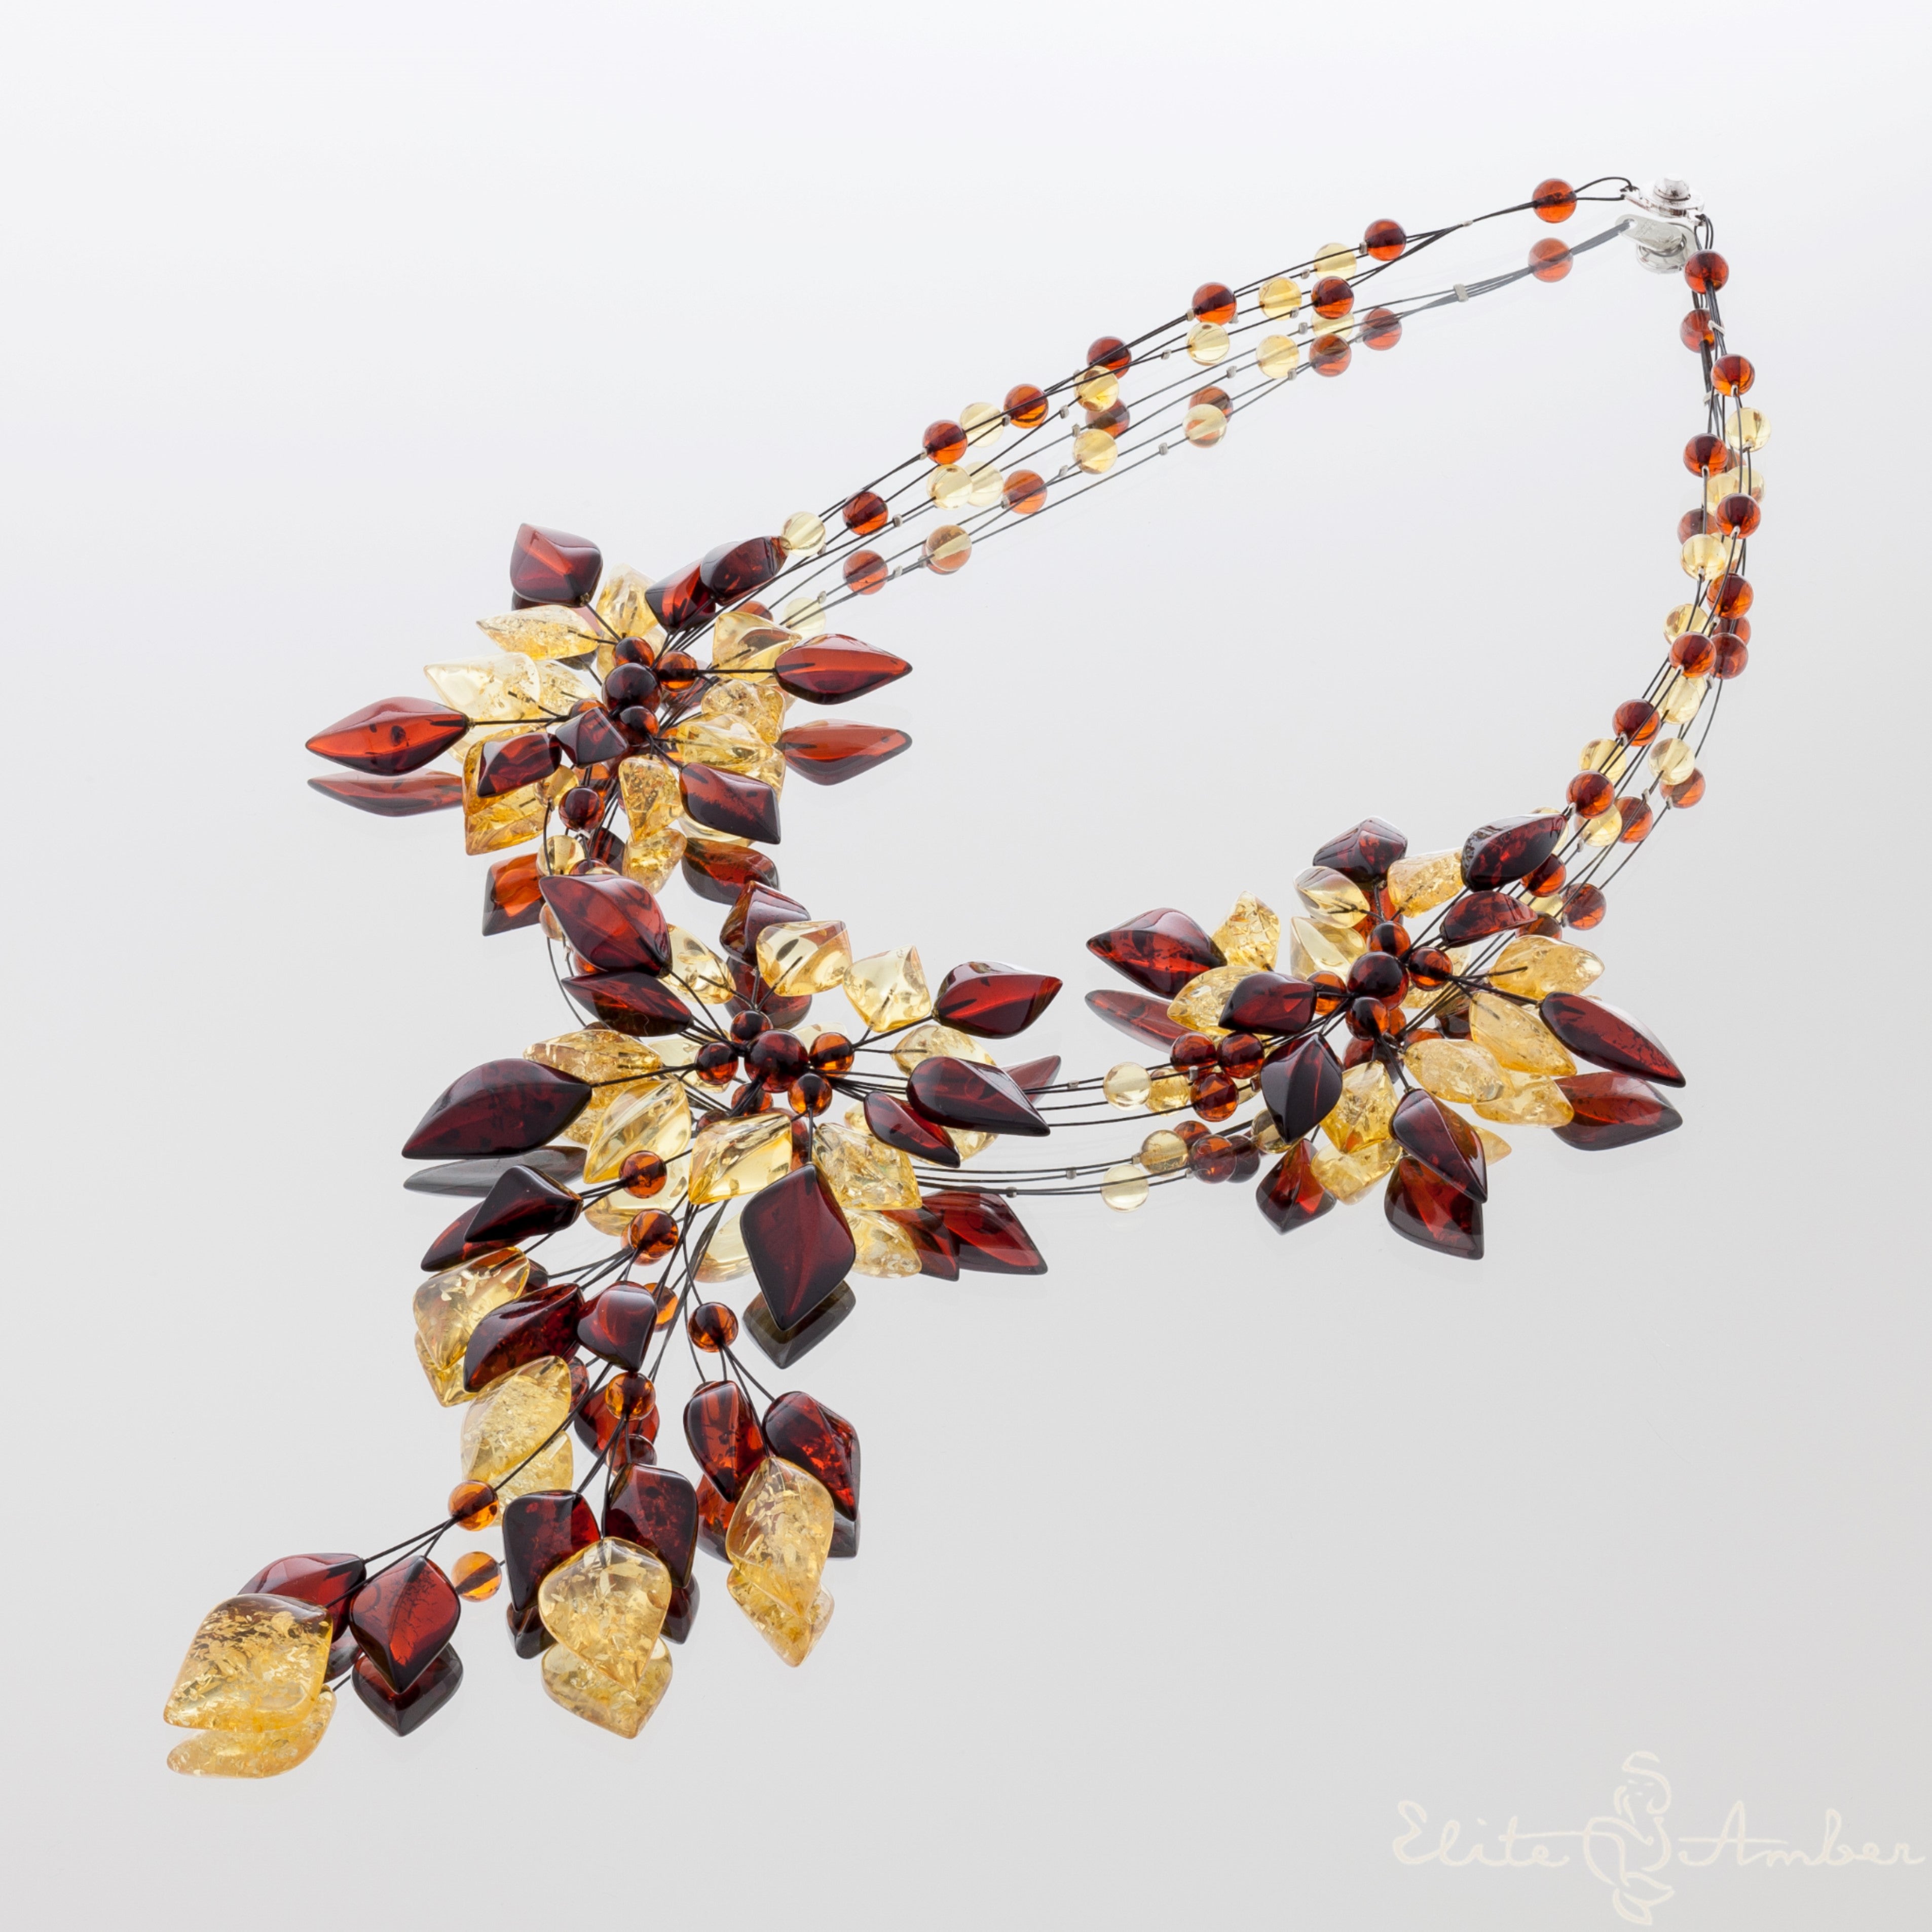 Amber necklace "Amazing lemon flowers"